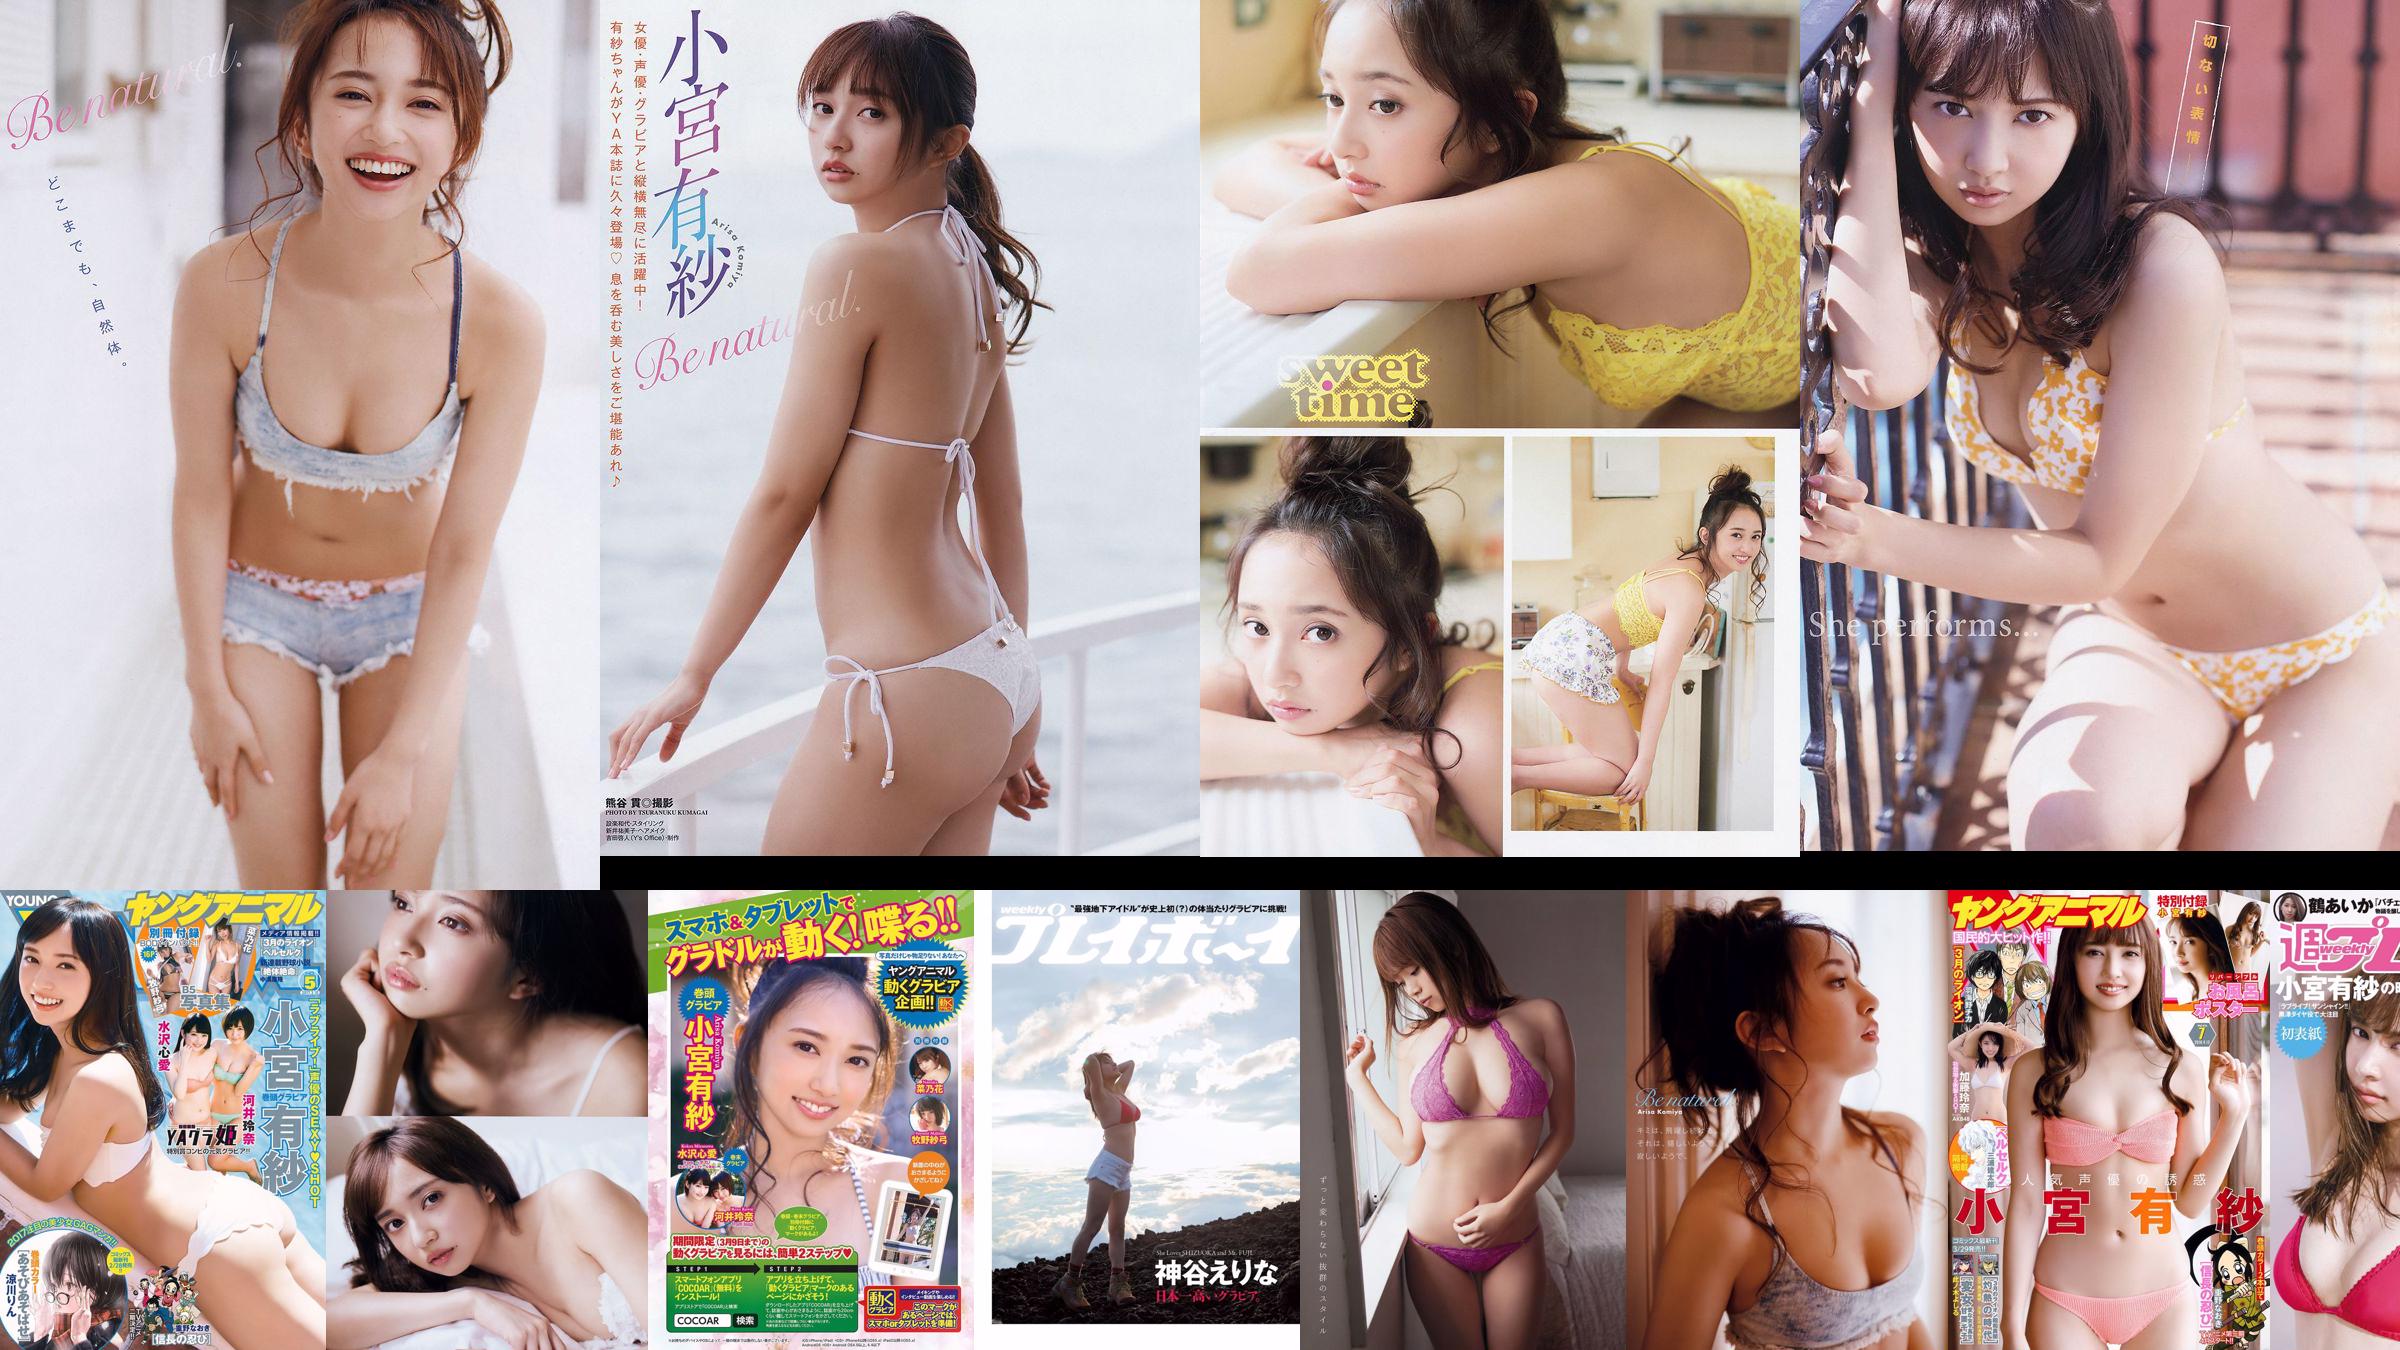 Arisa Komiya Aika Tsuru Sayaka Isoyama Kasumi Arimura Rina Otomo Sei Shiraishi Erina Kamiya [Weekly Playboy] 2017 No.41 Photographie No.3253bd Page 1